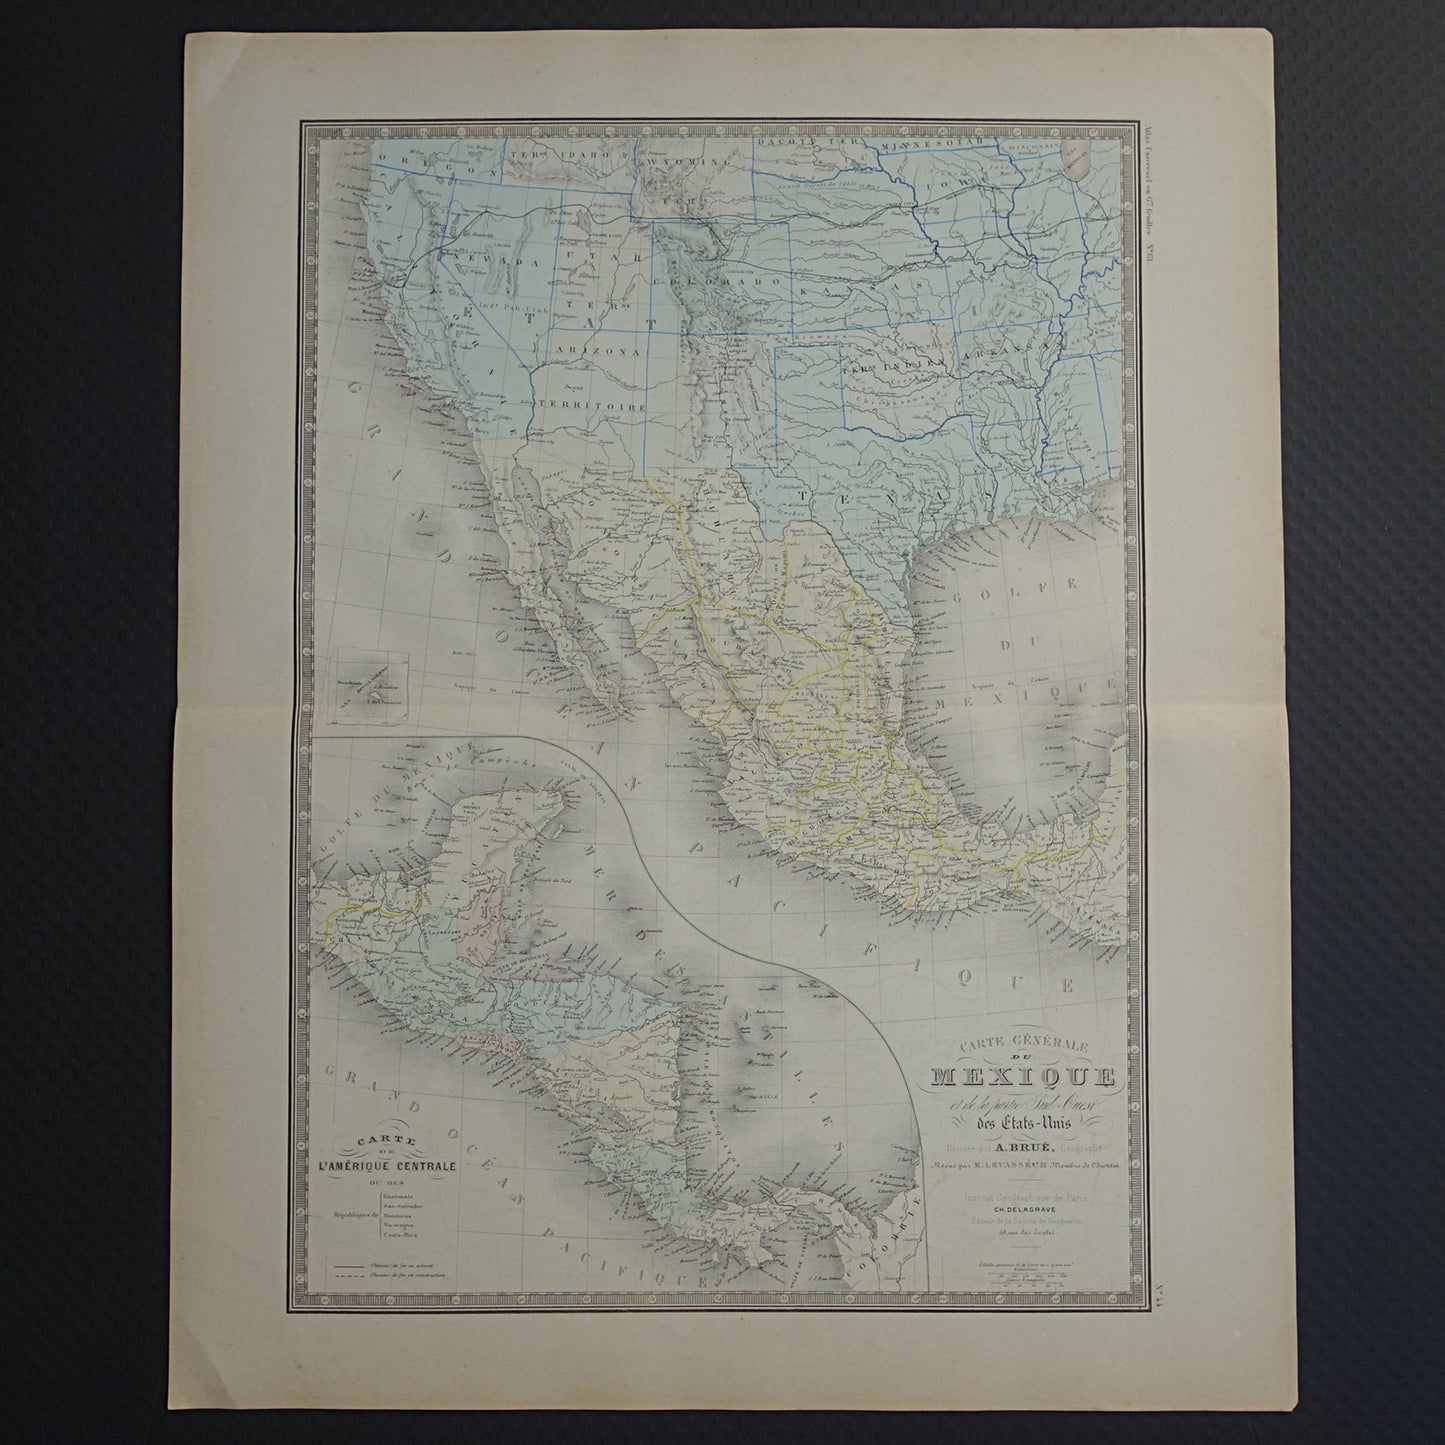 Mexico en Verenige Staten oude kaart uit 1876 originele antieke landkaart westkust VS Californië USA vintage historische kaarten